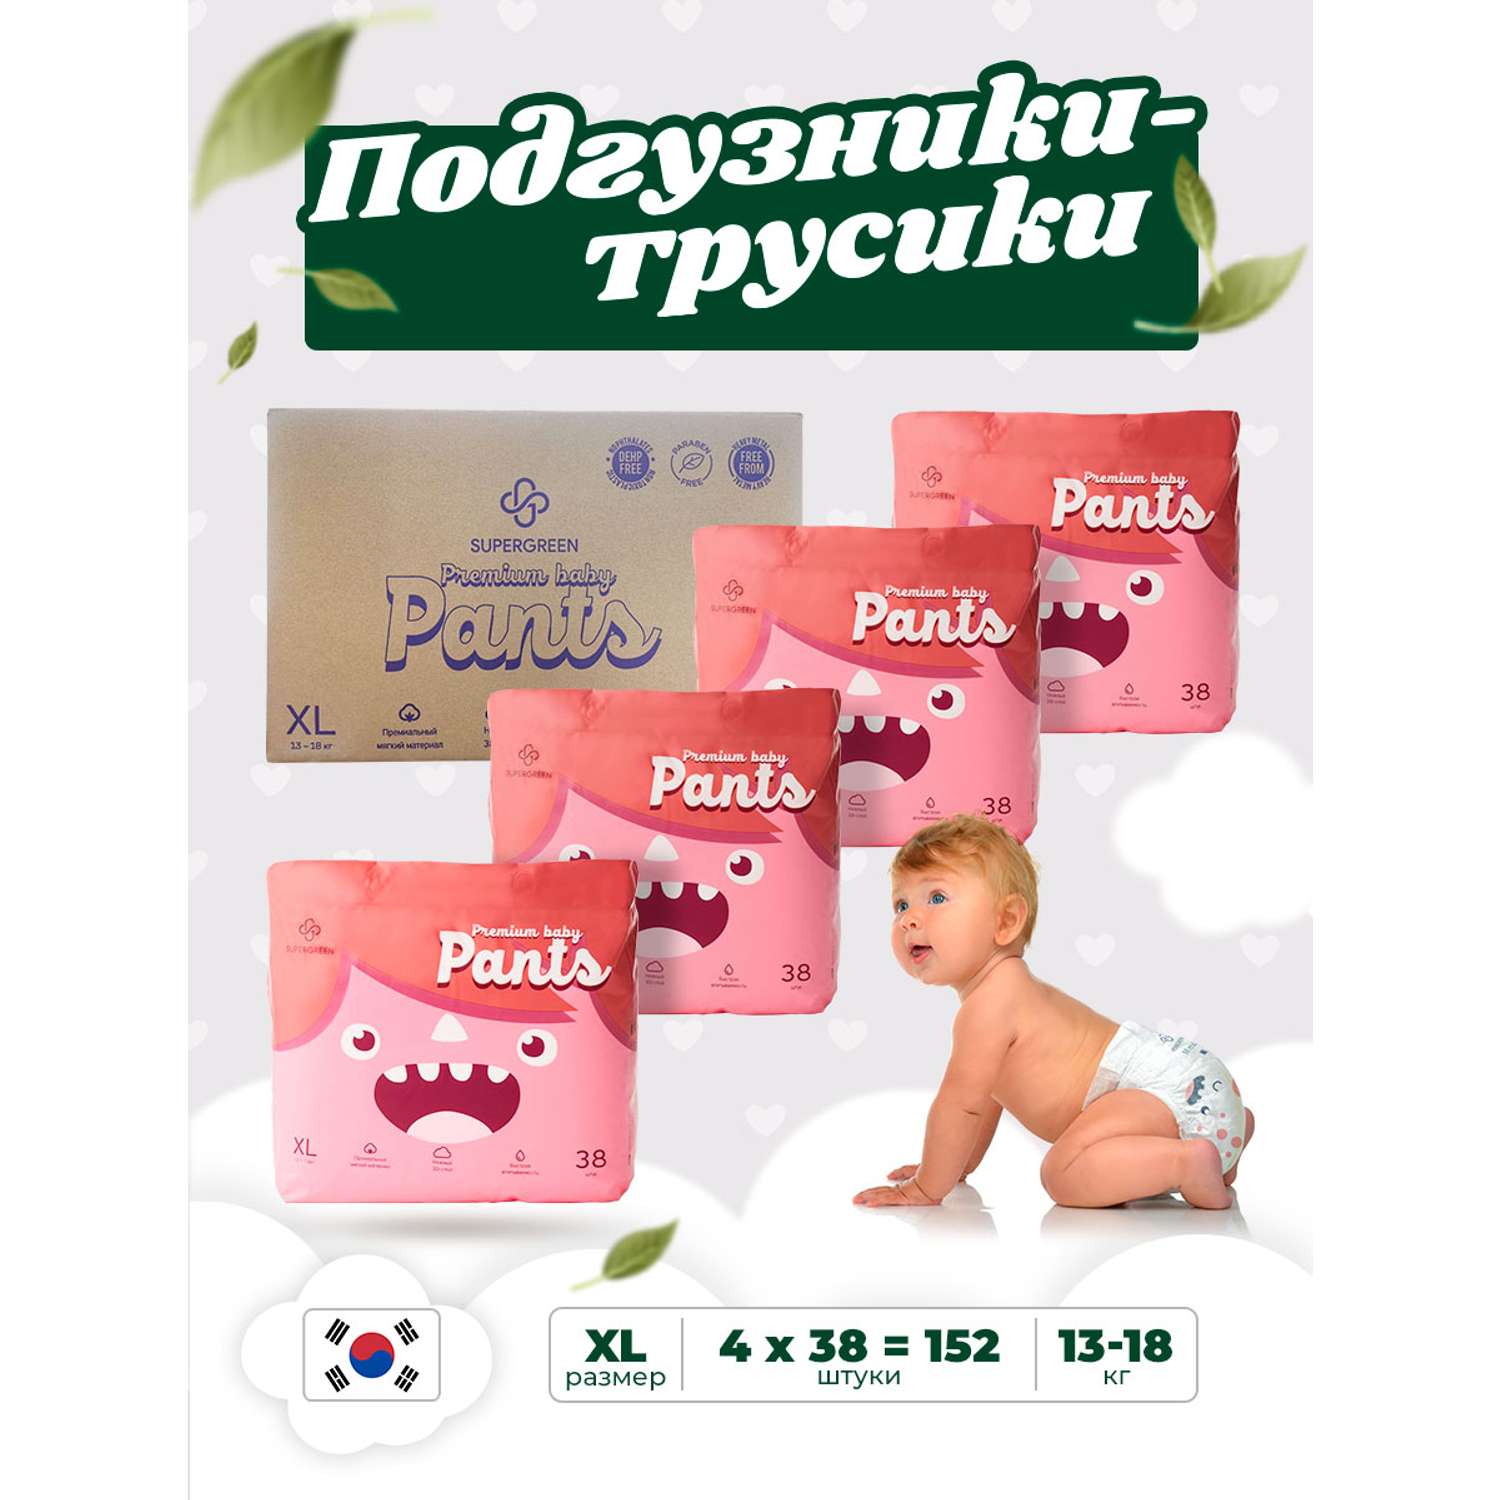 Трусики-подгузники SUPERGREEN Premium baby Pants ХL размер 4 упаковки по 38 шт 13-18 кг ультрамягкие - фото 1